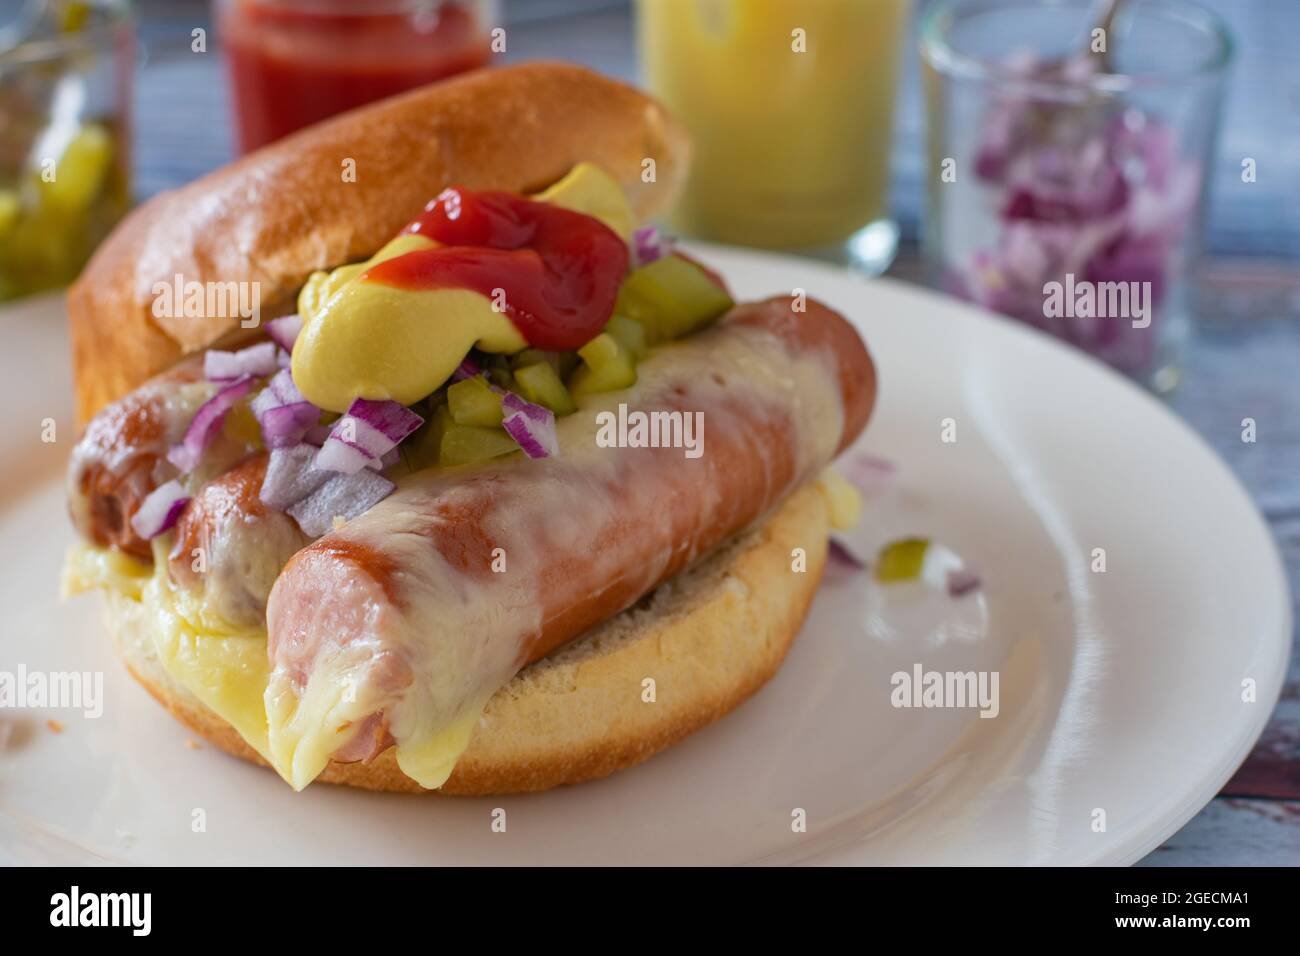 Hot dog au fromage, oignons rouges hachés, cornichons, moutarde et ketchup sur une assiette. Repas rapide fait maison Banque D'Images